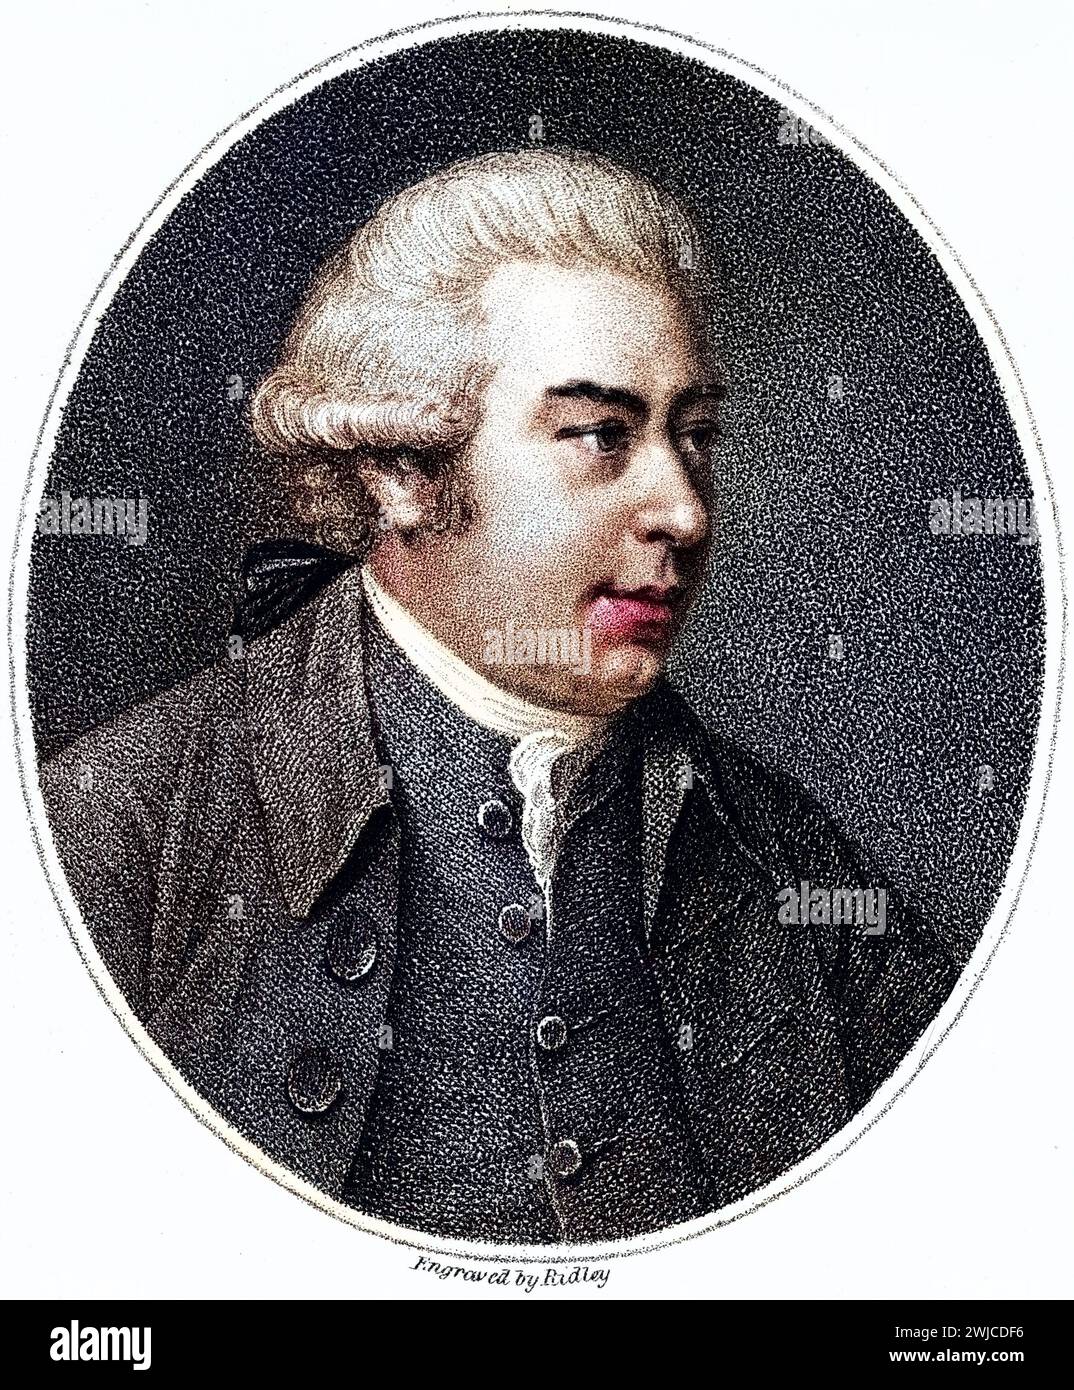 Sir Joseph Banks, 1. Baronet geb. 13. Februar 1743 in London gest. 19. Juni 1820 ebenda war ein britischer Naturforscher, insbesondere Botaniker, der Stock Photo